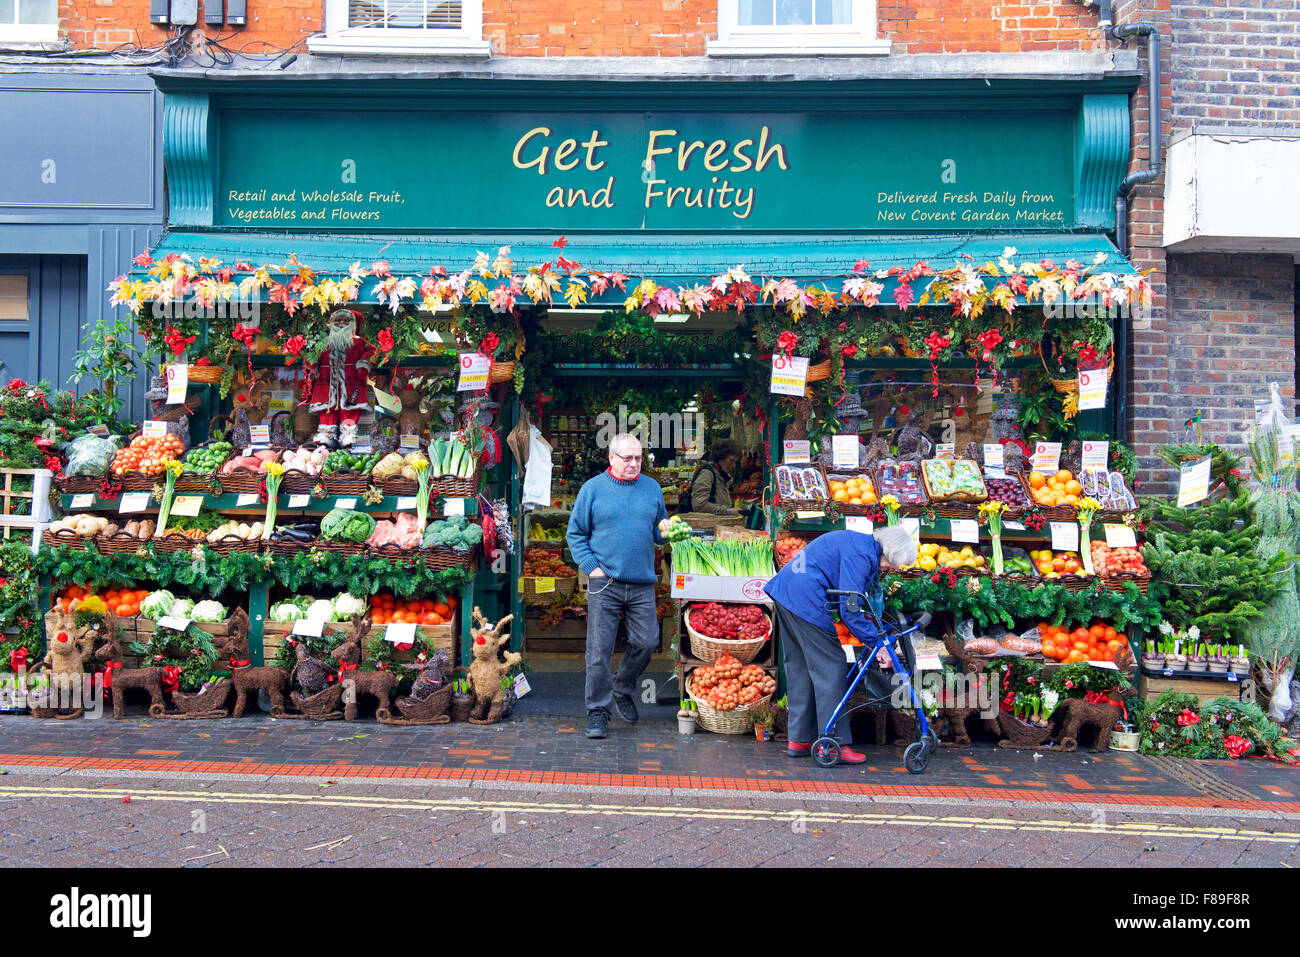 Display esterno fruttivendolo shop - ottenere fresco e fruttato - a Alton, Hampshire, Inghilterra, Regno Unito Foto Stock